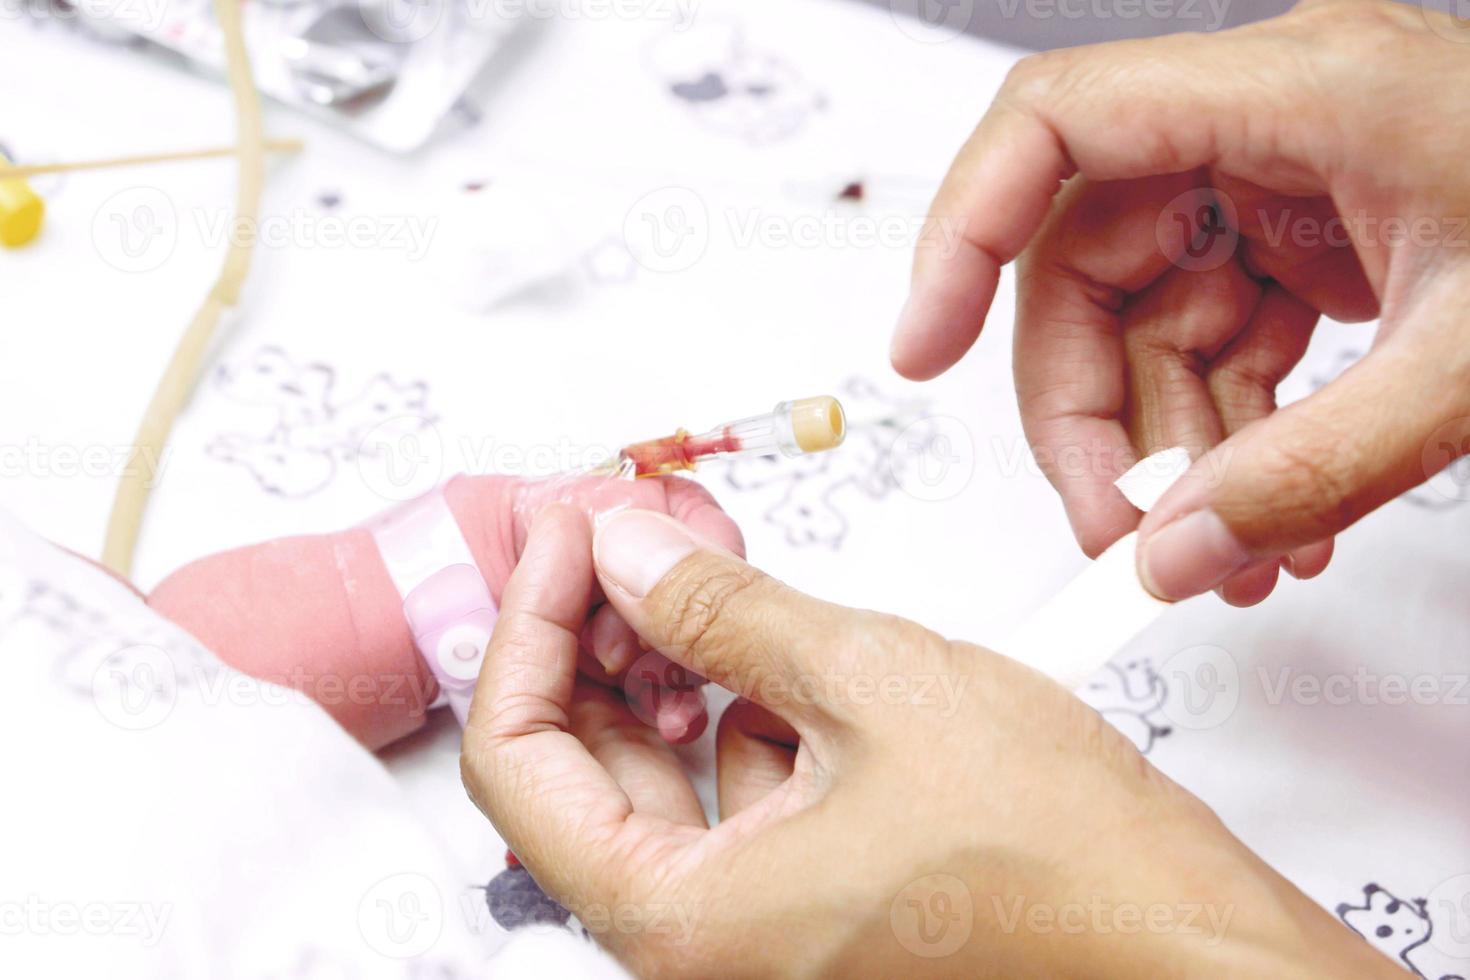 sjuksköterskans händer sticker injektionspluggen med hjälp av en medicinsk tejp för att fästa nålen på barnets hand och såra. foto